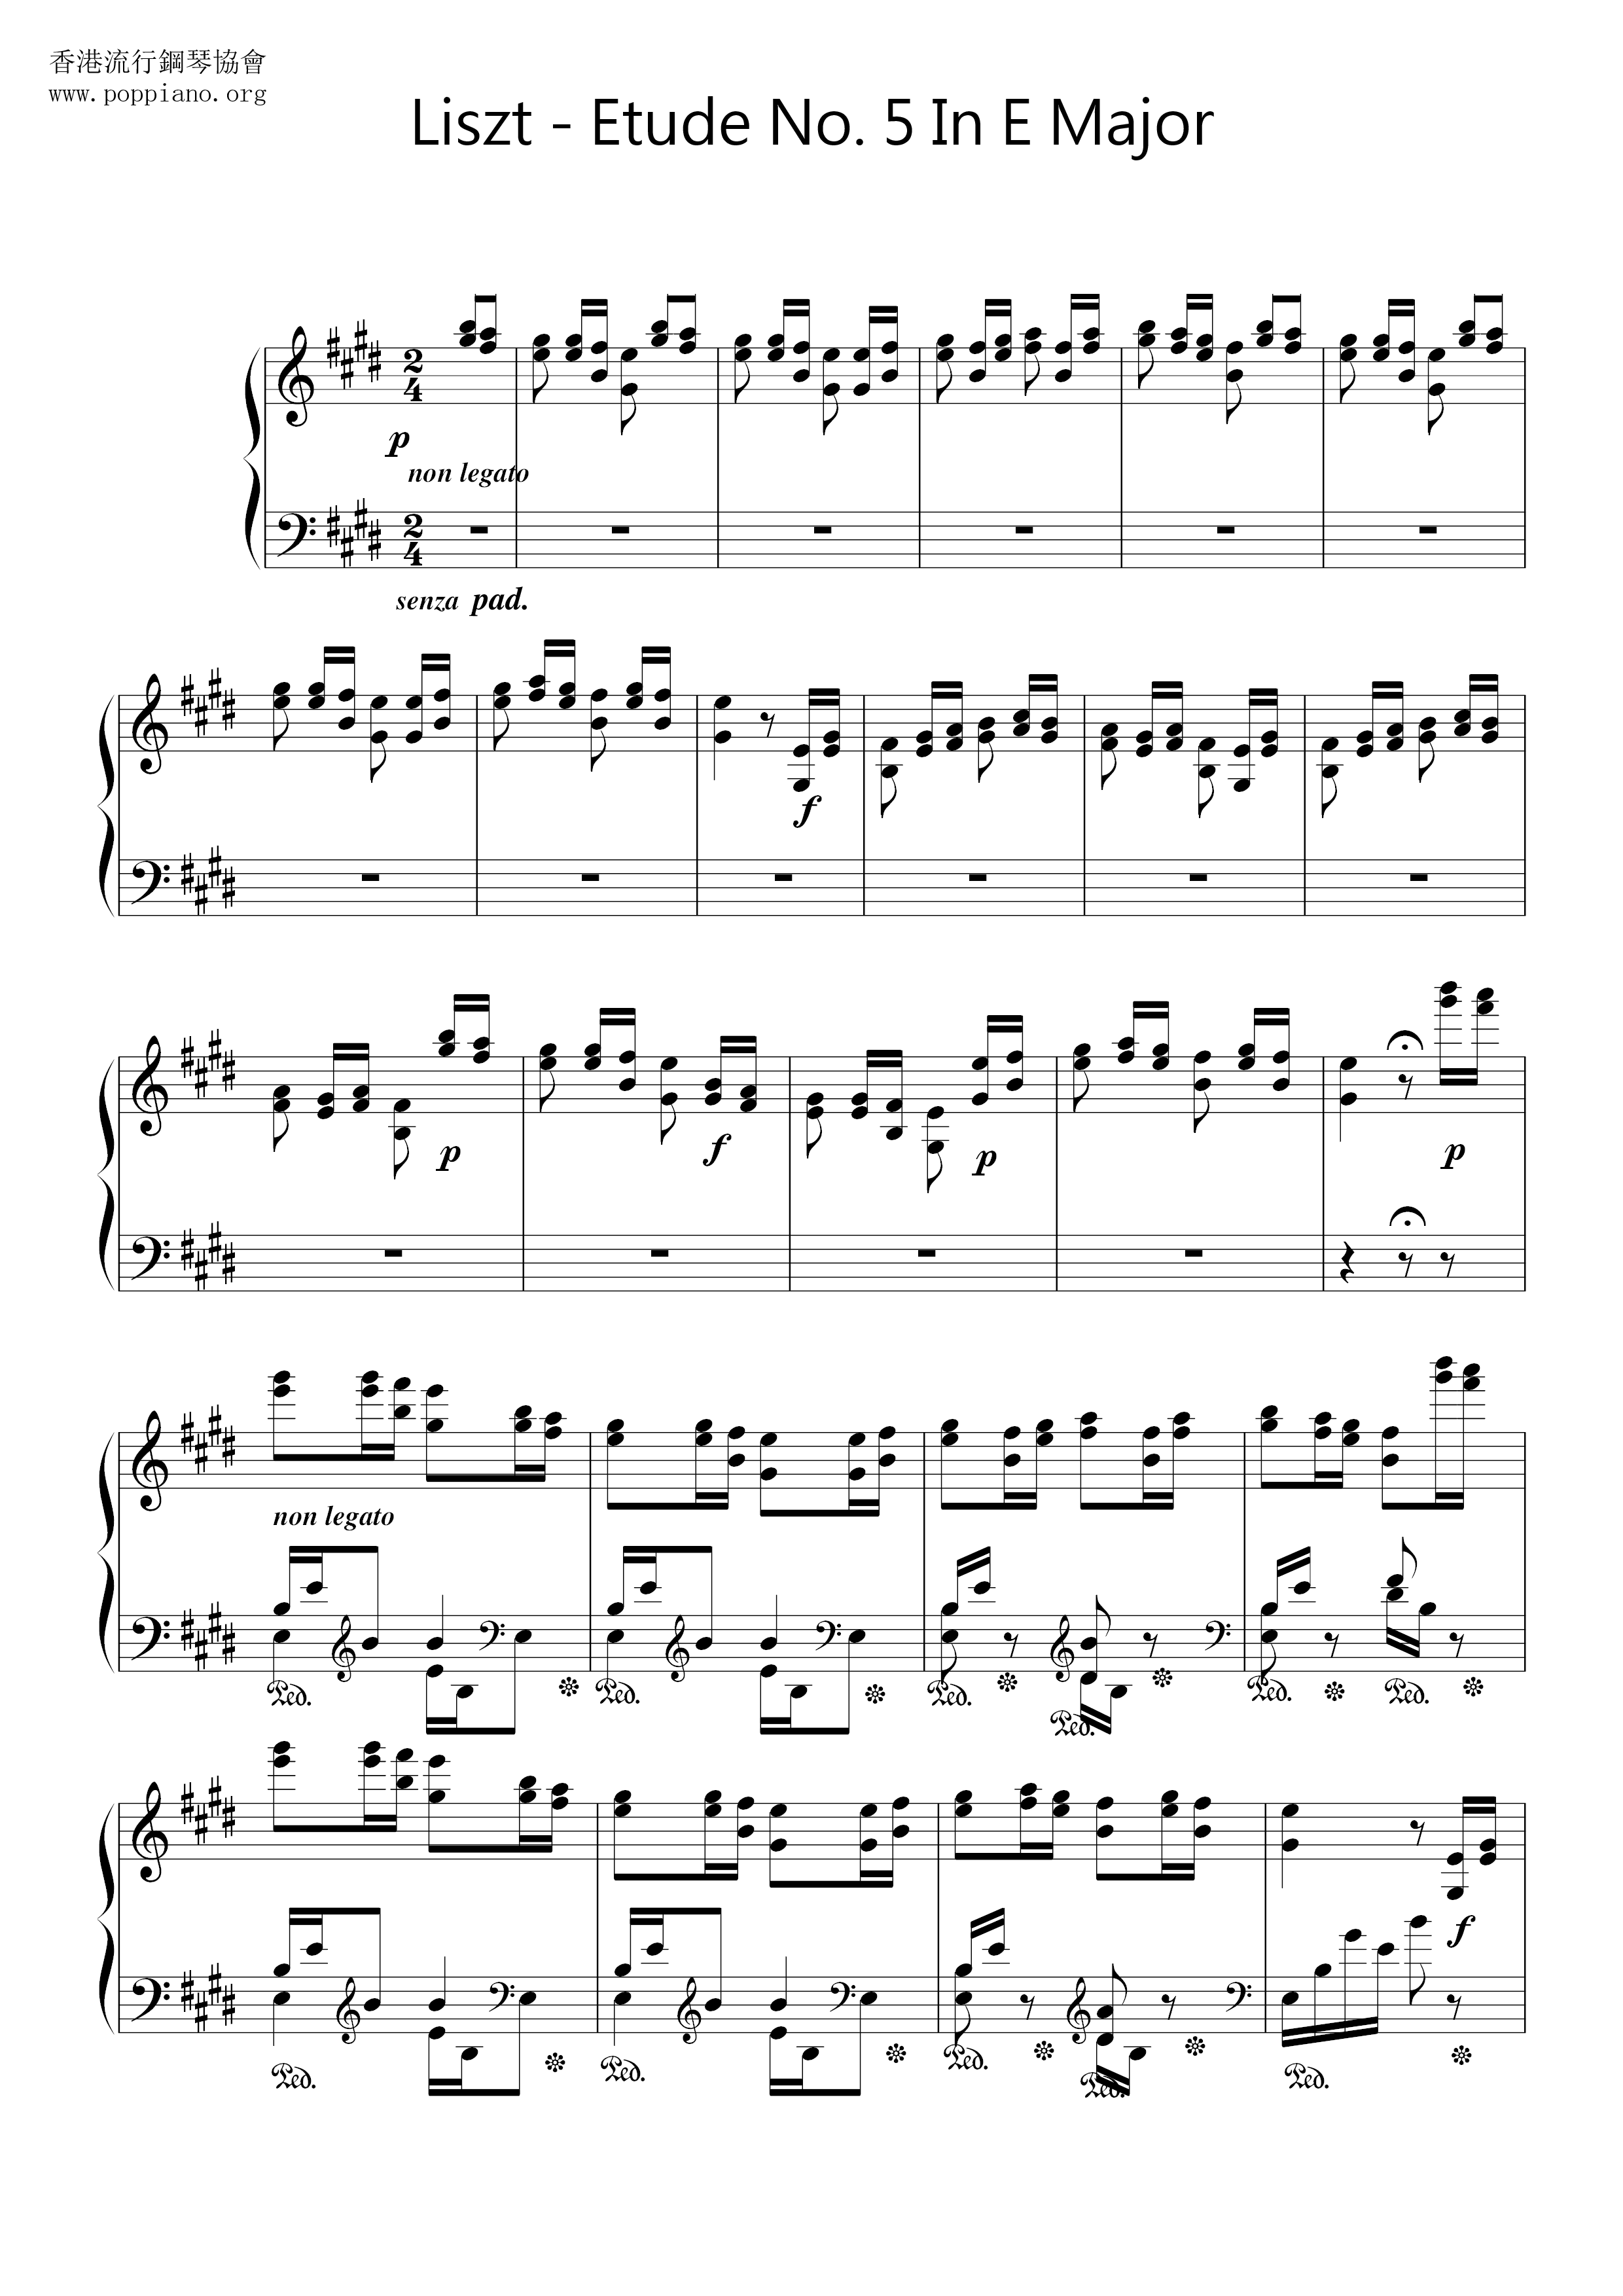 Etude No. 5 in E Major, La Chasse 狩獵琴譜